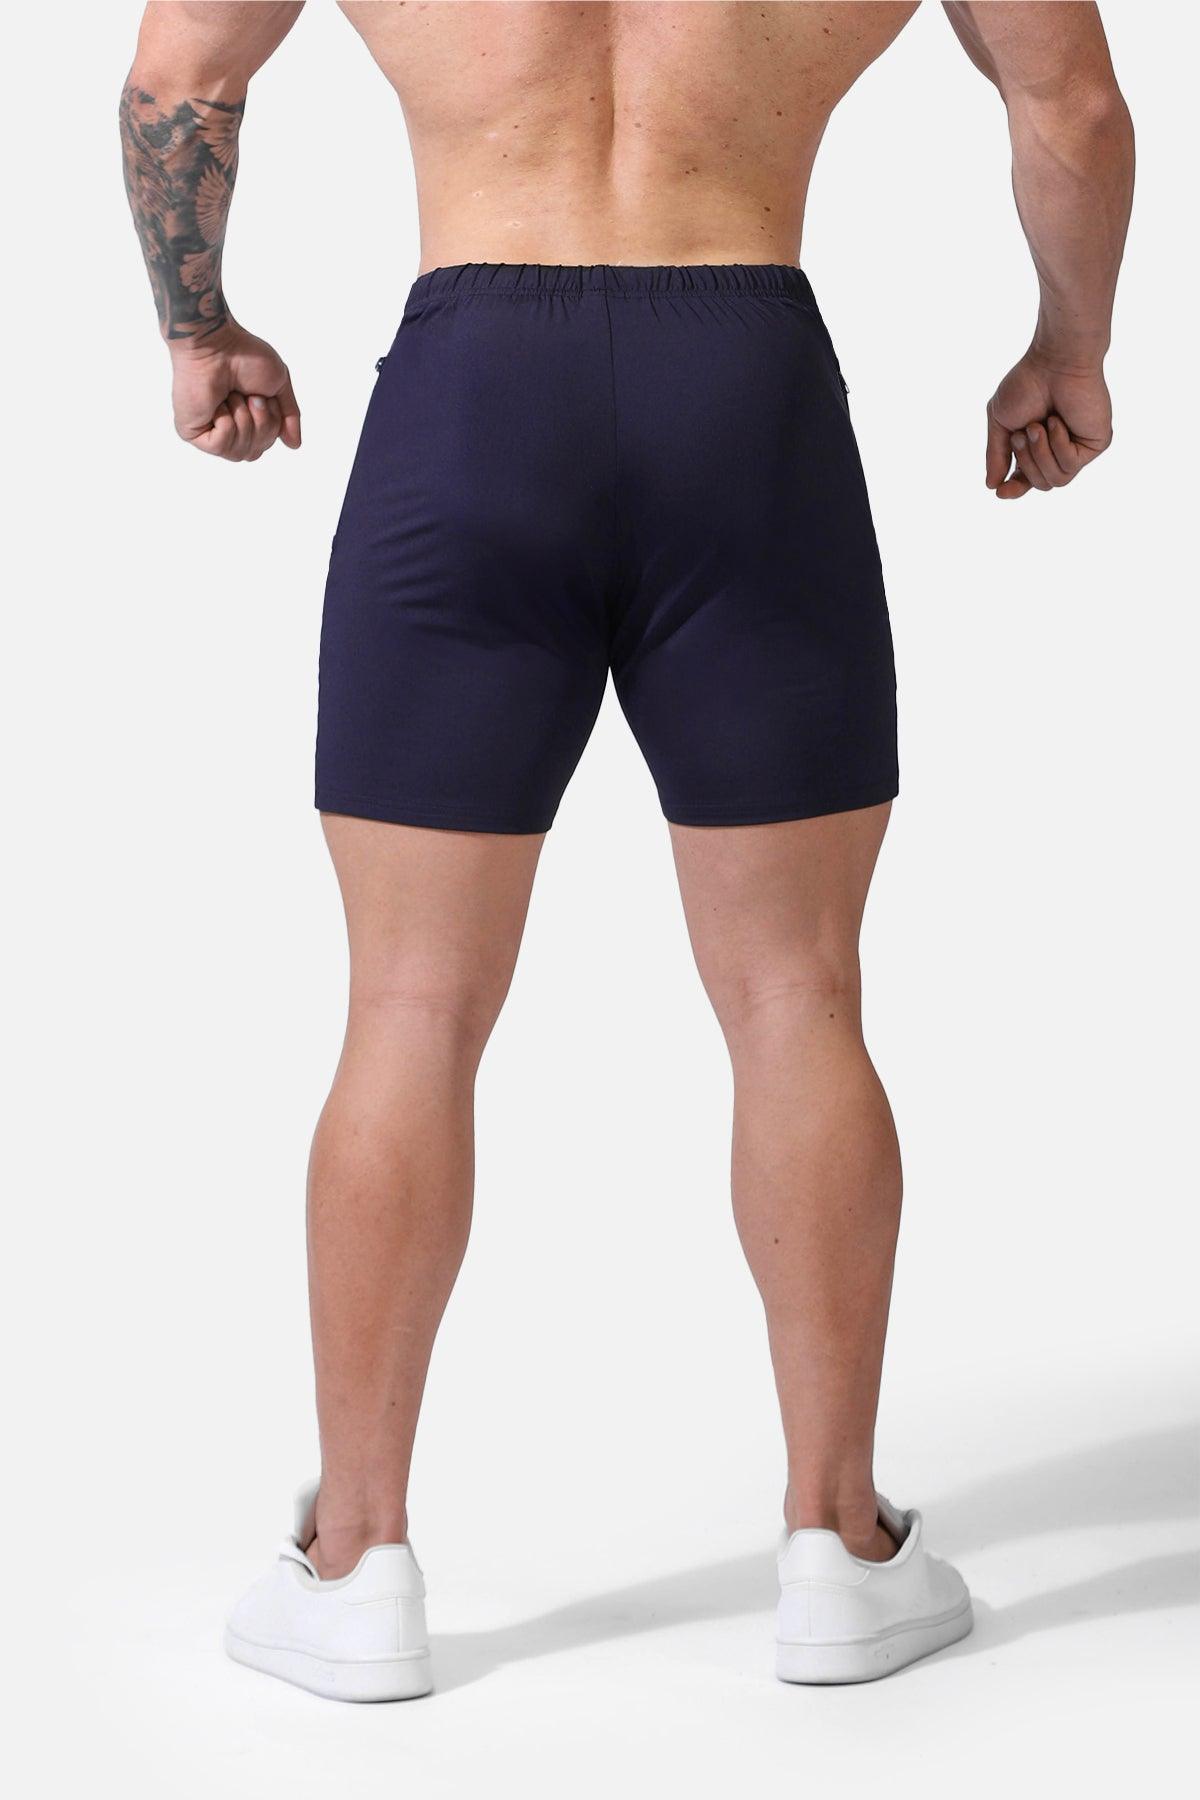 Agile Bodybuilding 4'' Shorts w Zipper Pockets - Gray – Jed North